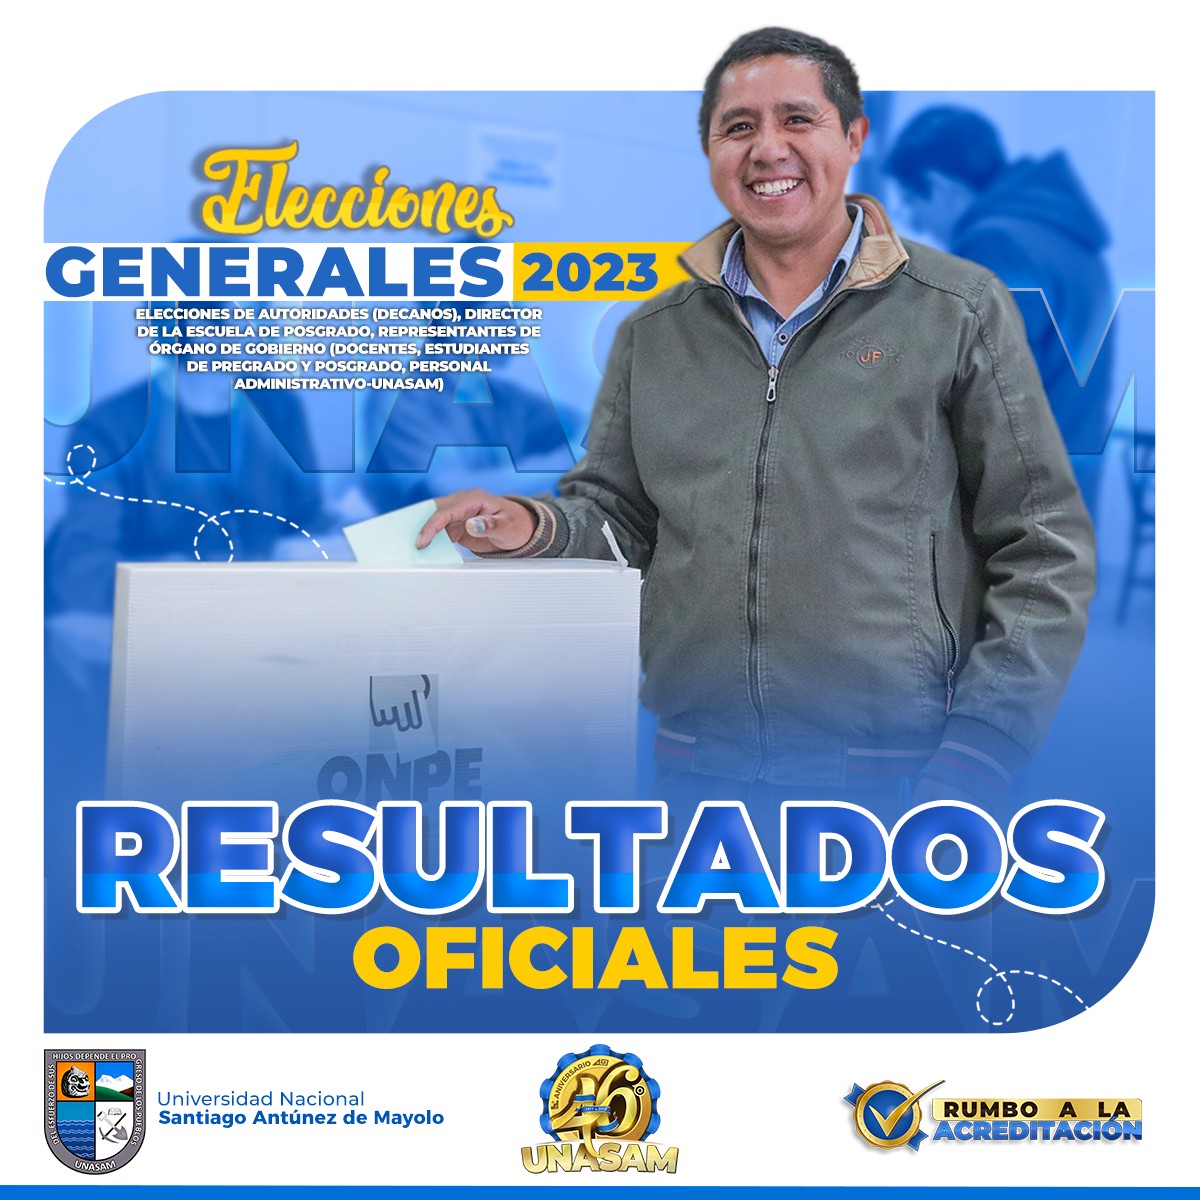  																RESULTADOS DE LAS ELECCIONES GENERALES UNASAM- 2023
																